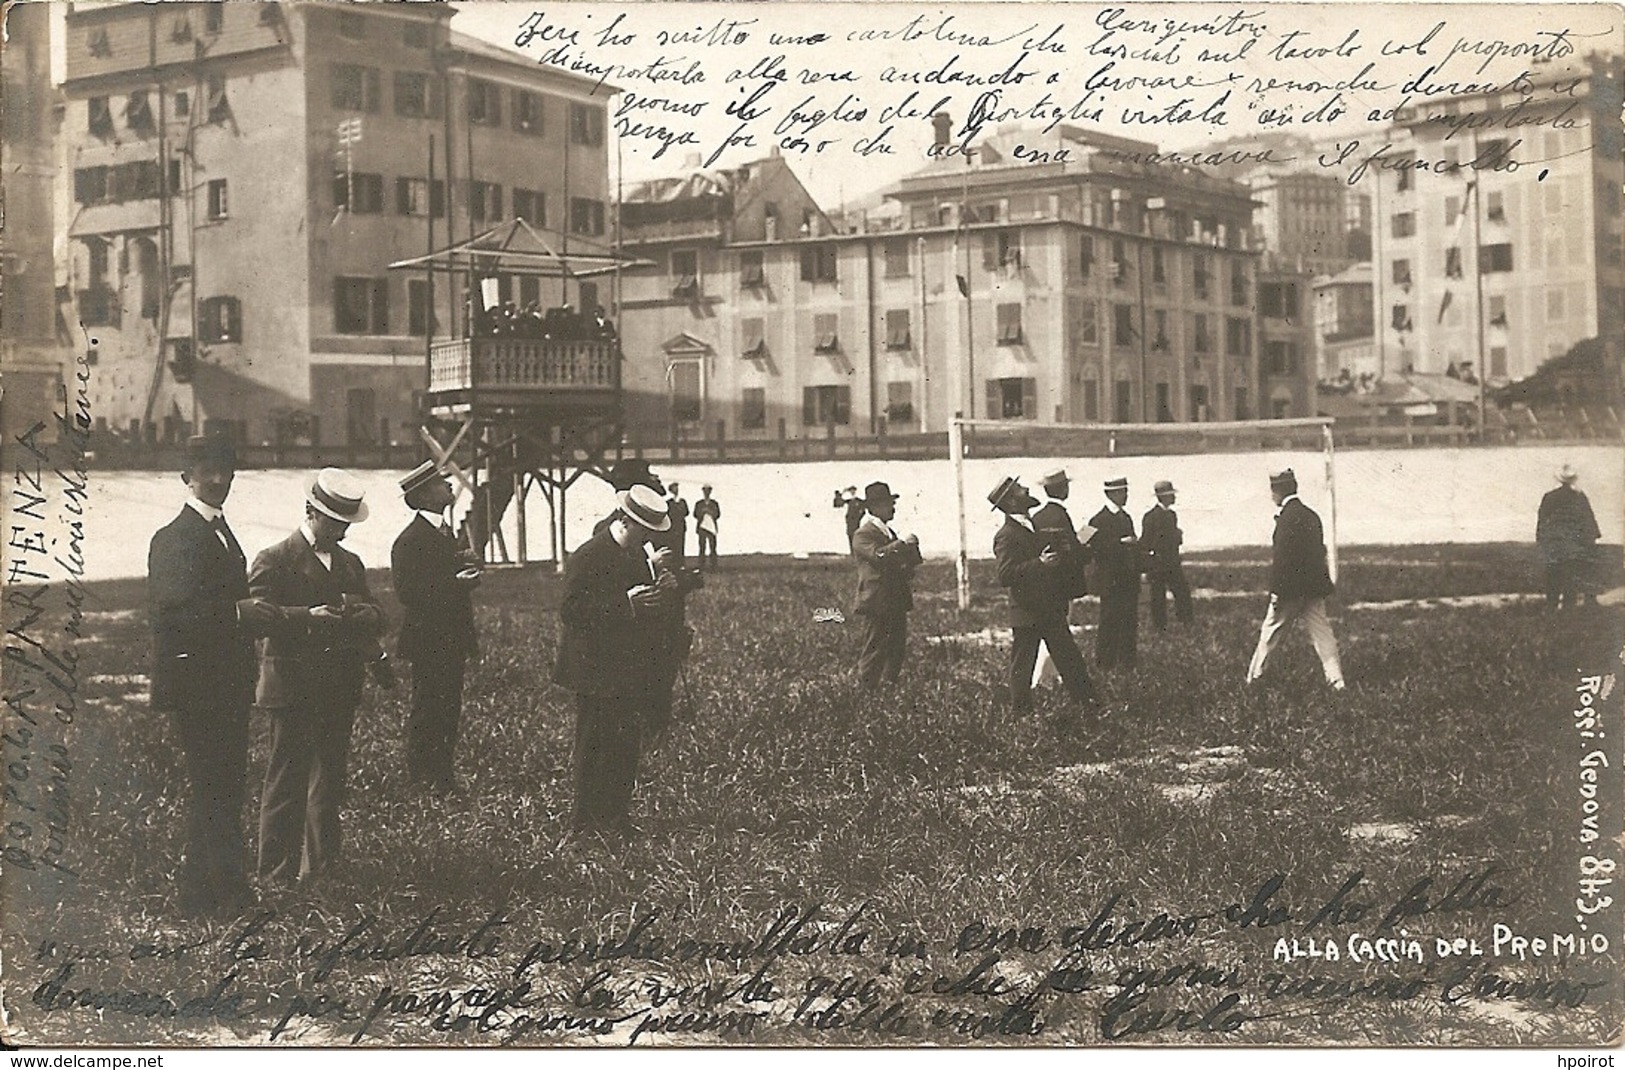 GENOVA - CONCORSO ALLA MIGLIORE ISTANTANEA - FORMATO PICCOLO - VIAGGIATA 1903 - (rif. R78) - Photographs